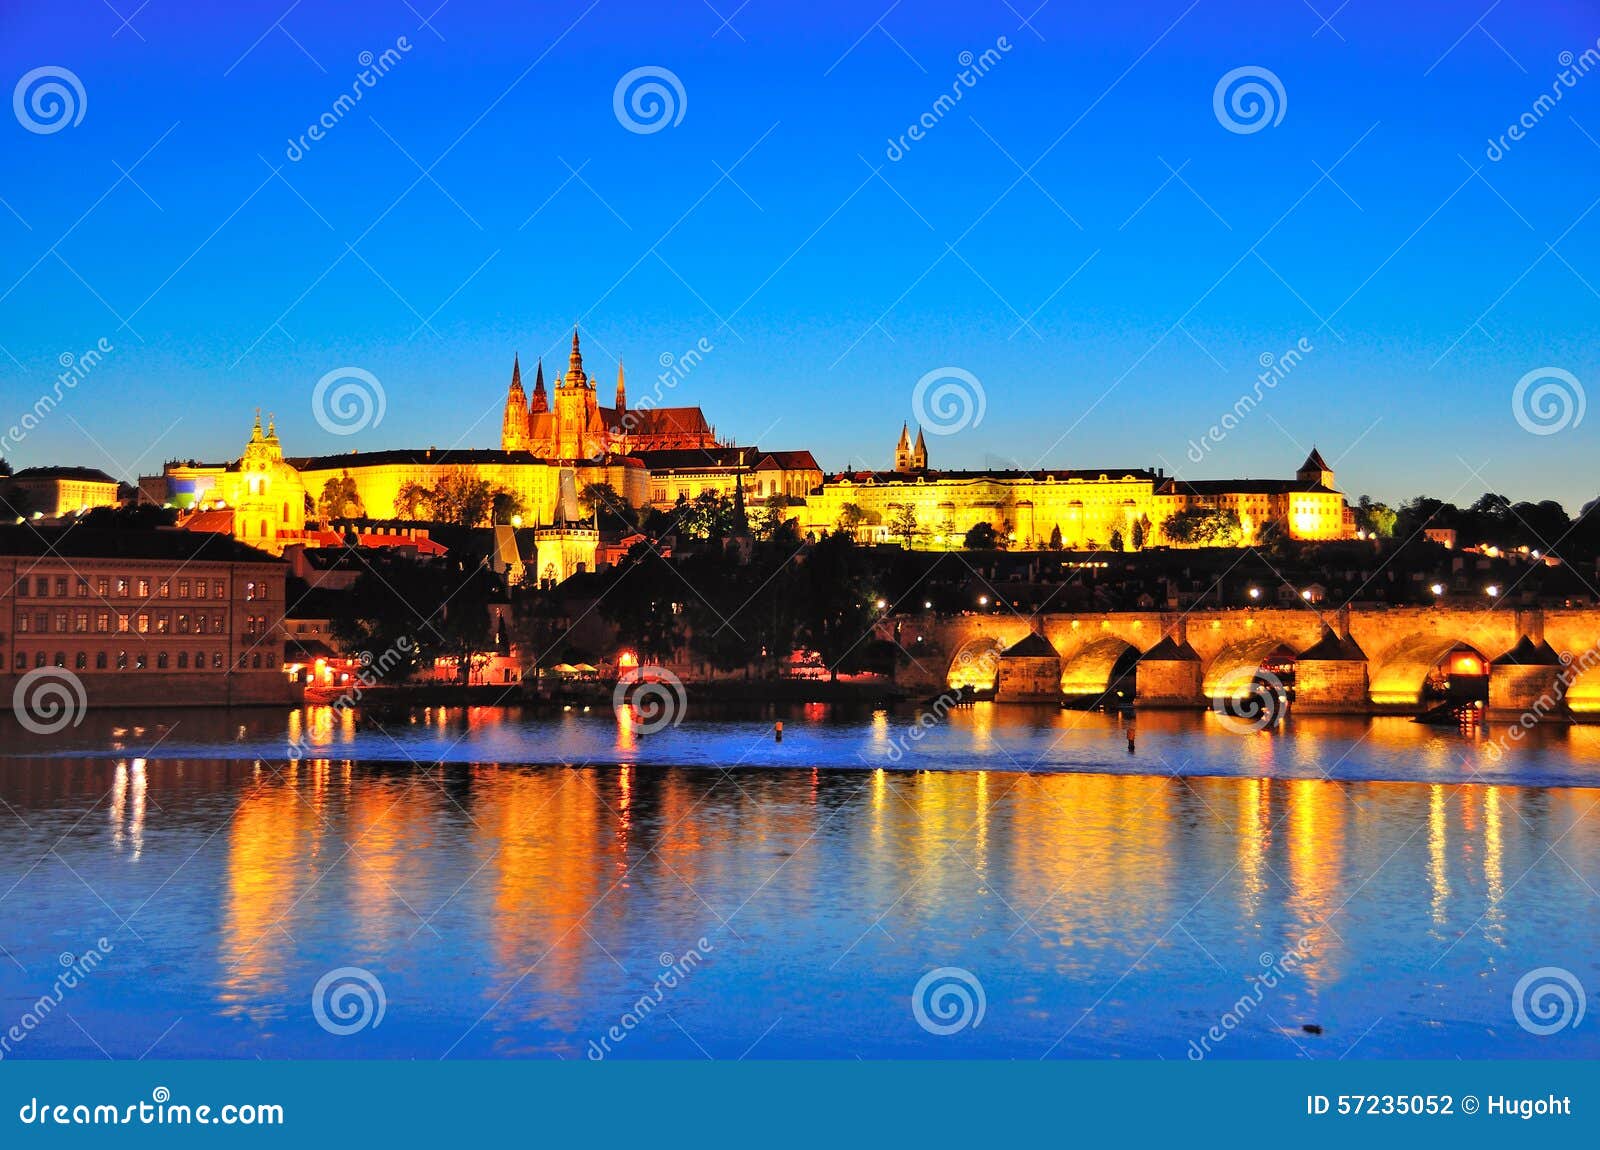 Prague slott på natten, Tjeckien. En nattsikt av den Prague slotten som reflekterar i floden, Tjeckien